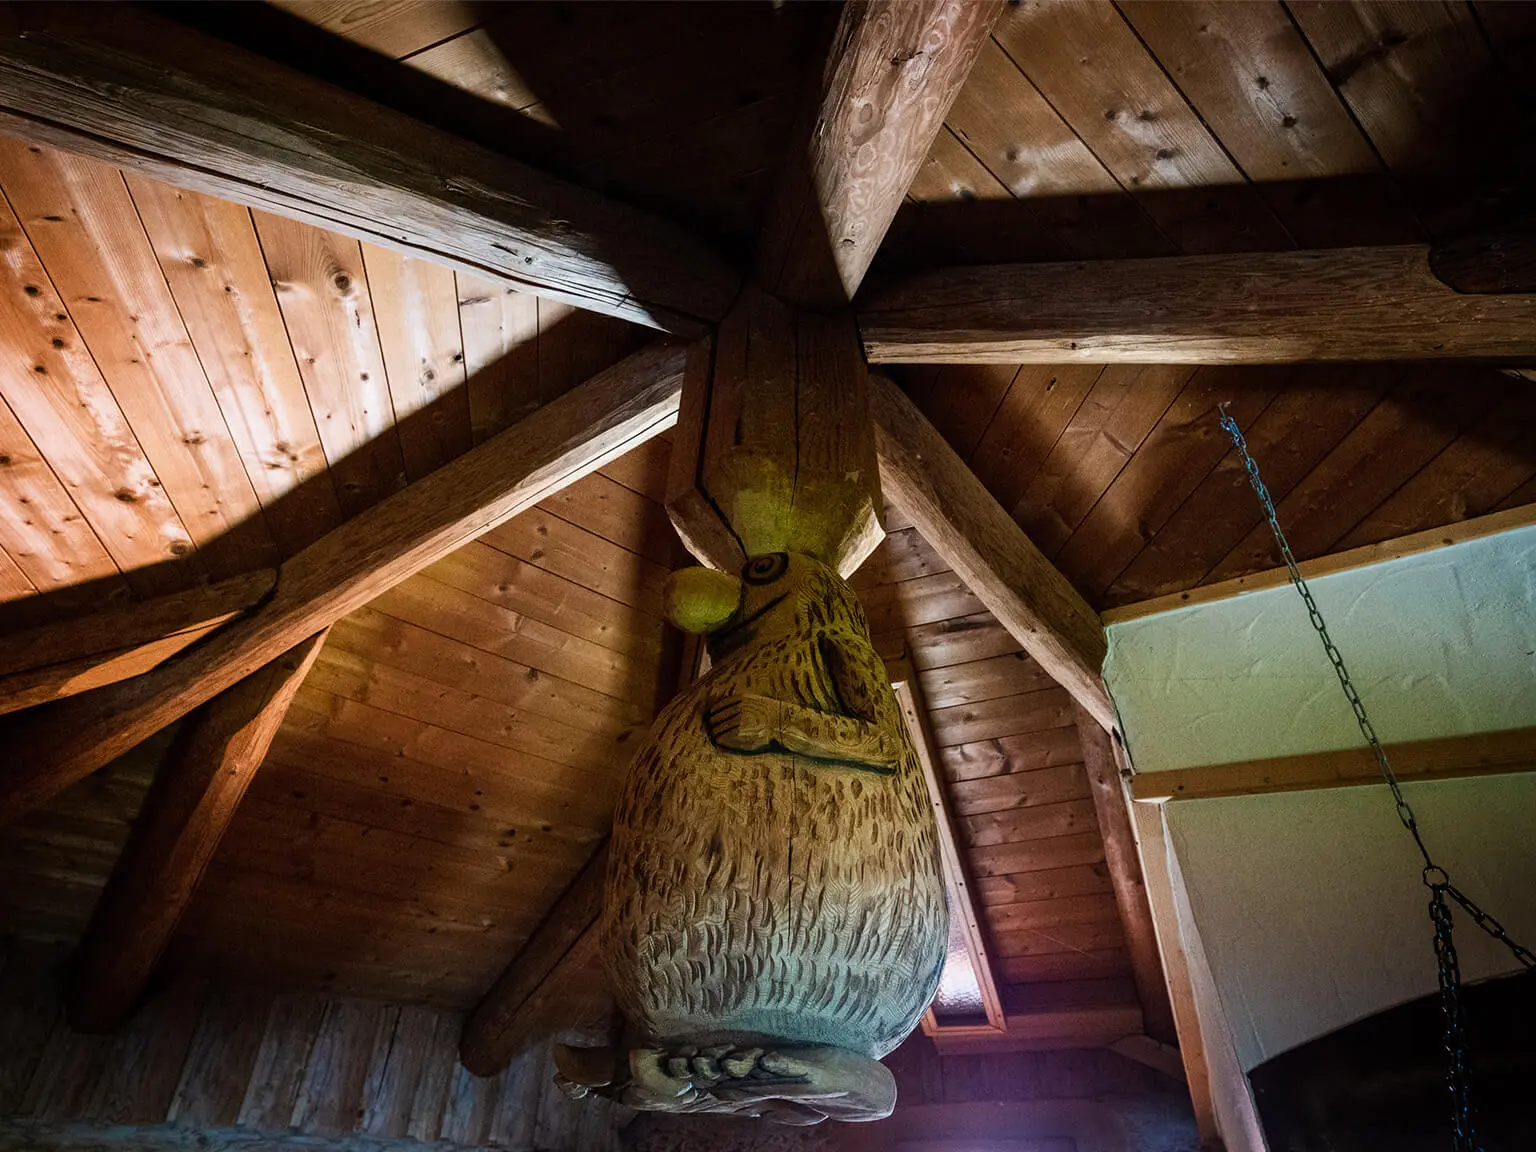 Innenansicht einer Sauna. Blick ins Dach mit einem hölzernen Knubbelmännchen - dicknasig und behaart -als Saunamaskottchen.